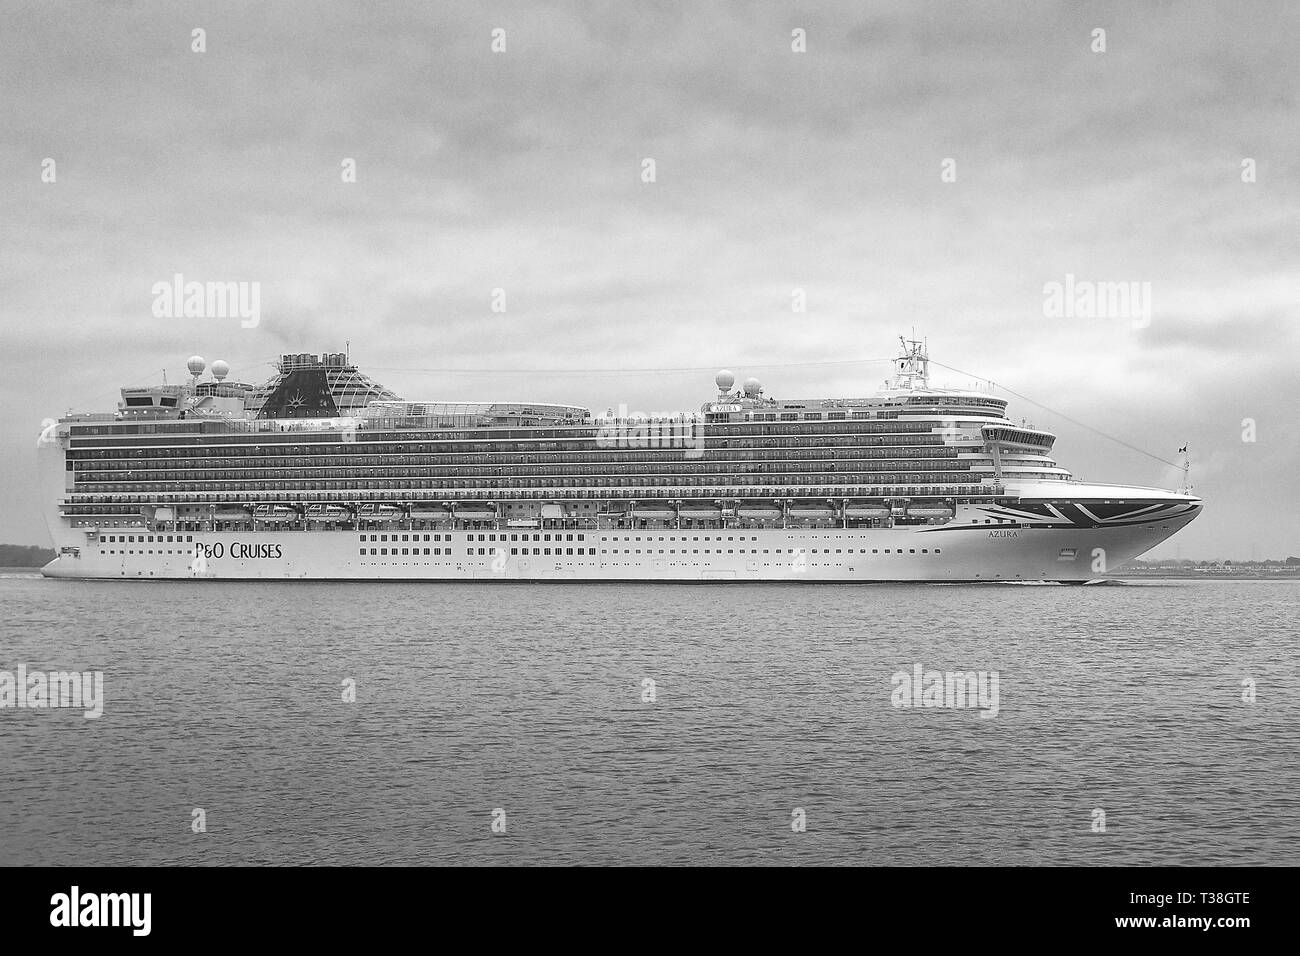 Photo en noir et blanc de la P&O Cruises, Cruise Ship géant, l'AZURA, en cours à Southampton Water, au départ du Port de Southampton, Royaume-Uni. Mars 2019. Banque D'Images